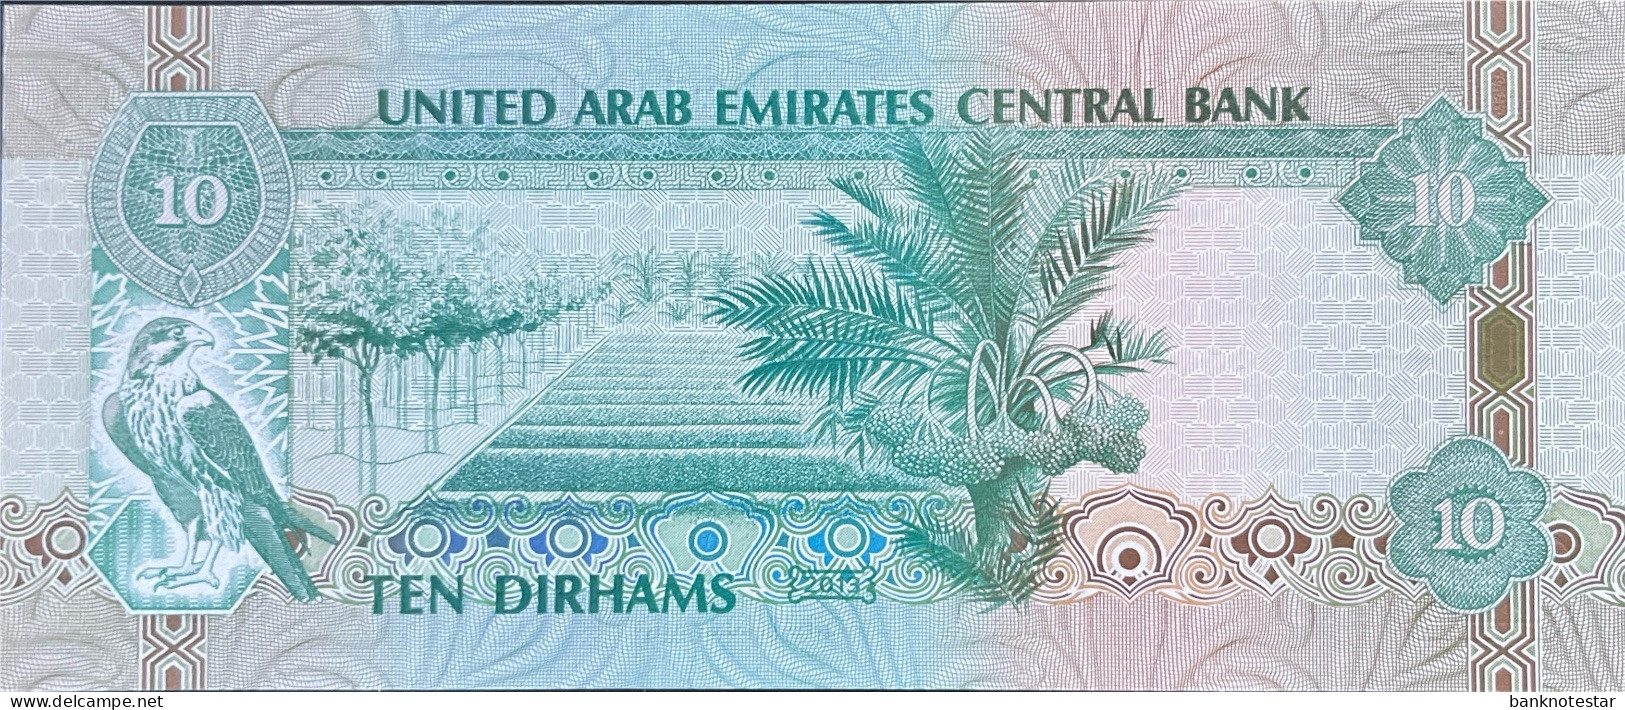 United Arab Emirates 10 Dirhams, P-27b (2013) - UNC - Ver. Arab. Emirate